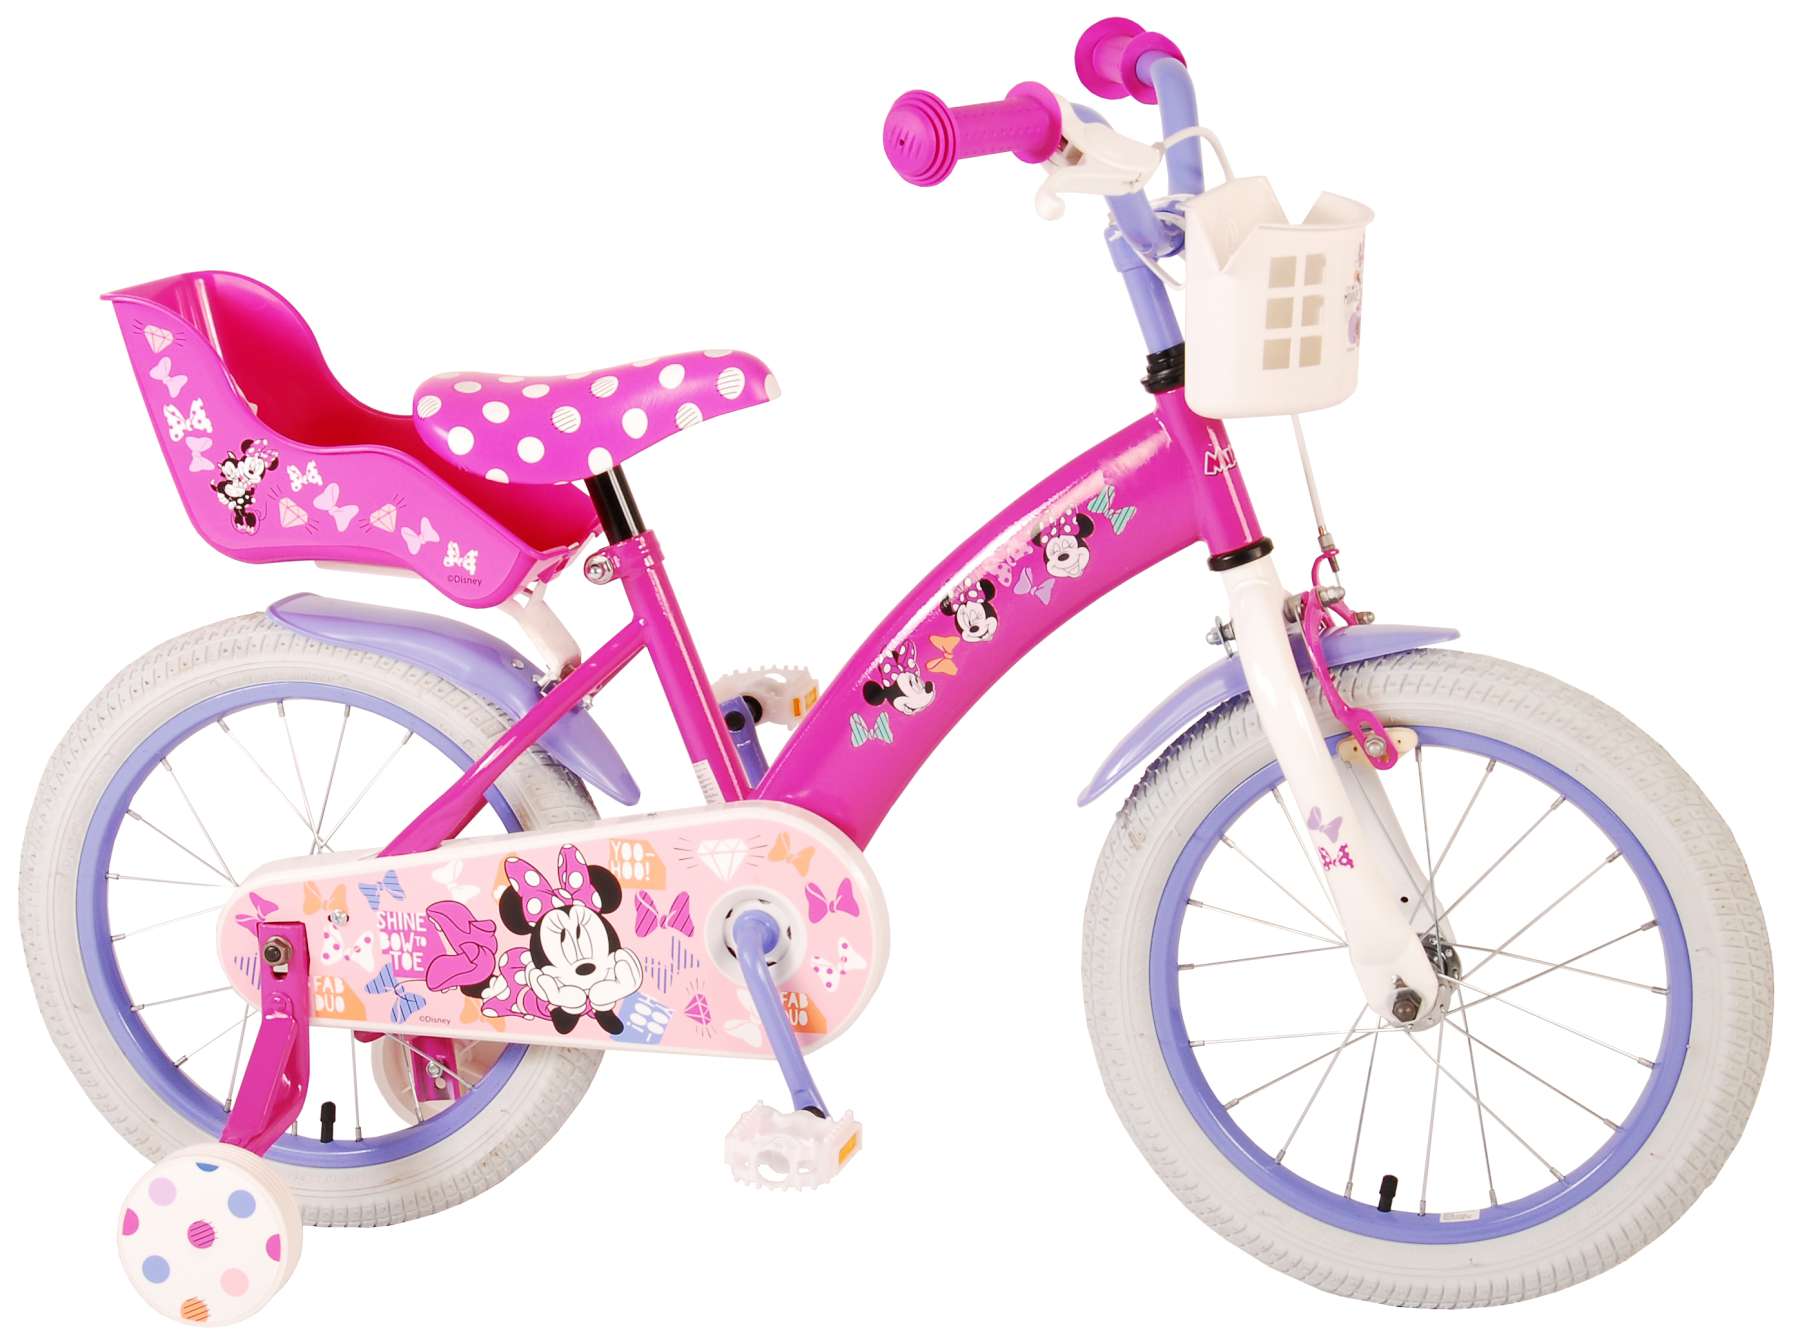 Belichamen Mevrouw In de omgeving van Disney Minnie Cutest Ever! Kinderfiets - Meisjes - 16 inch - Roze